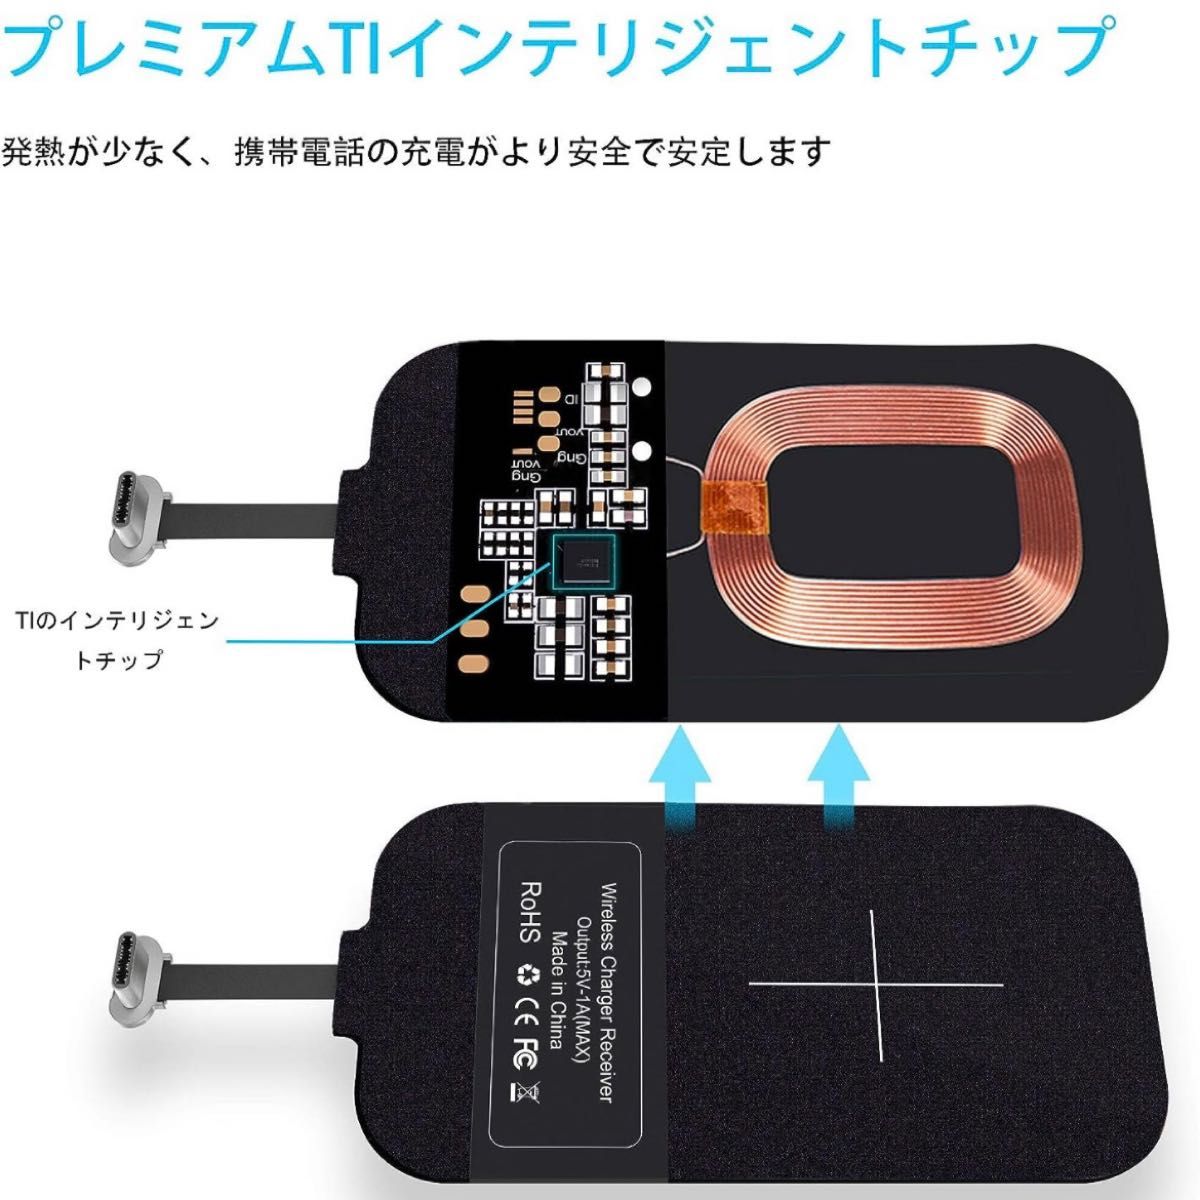 スマホ対応ワイヤレスレシーバーシート 置くだけ USB Type-C端子対応  チー 置くだけで充電